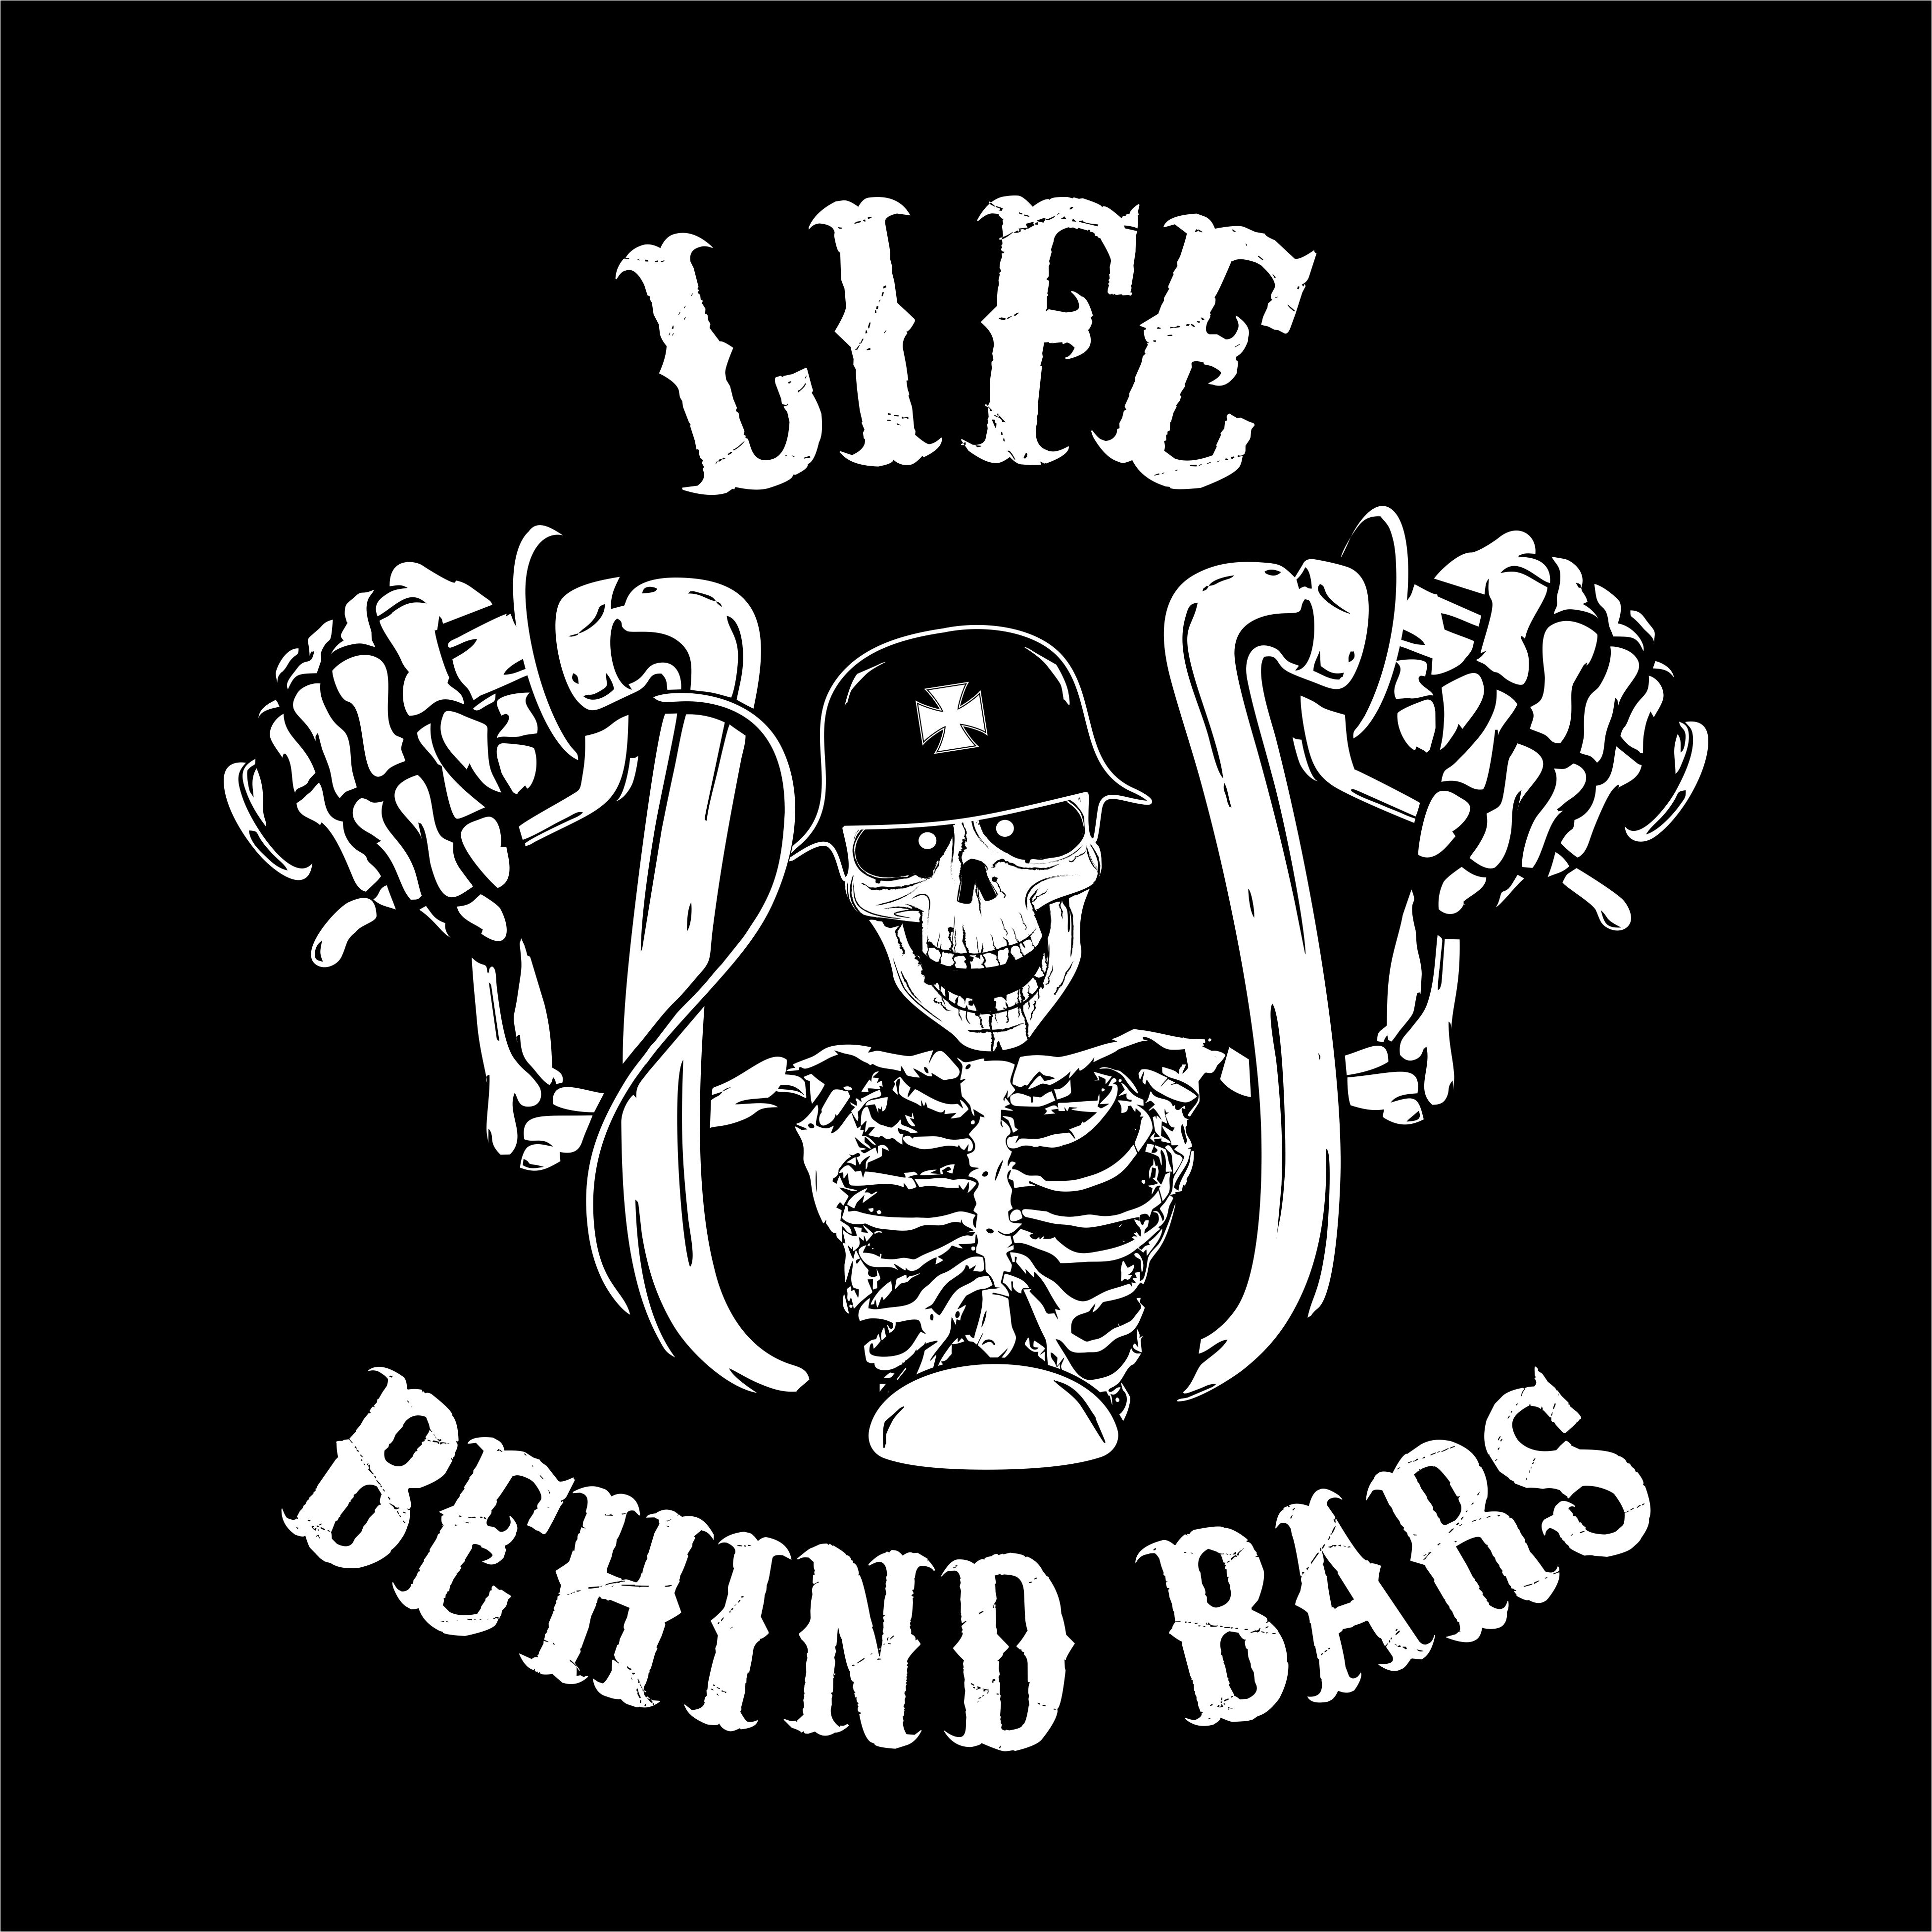 Download Life Behind Bars Biker Shirt - Visions Screenprinting